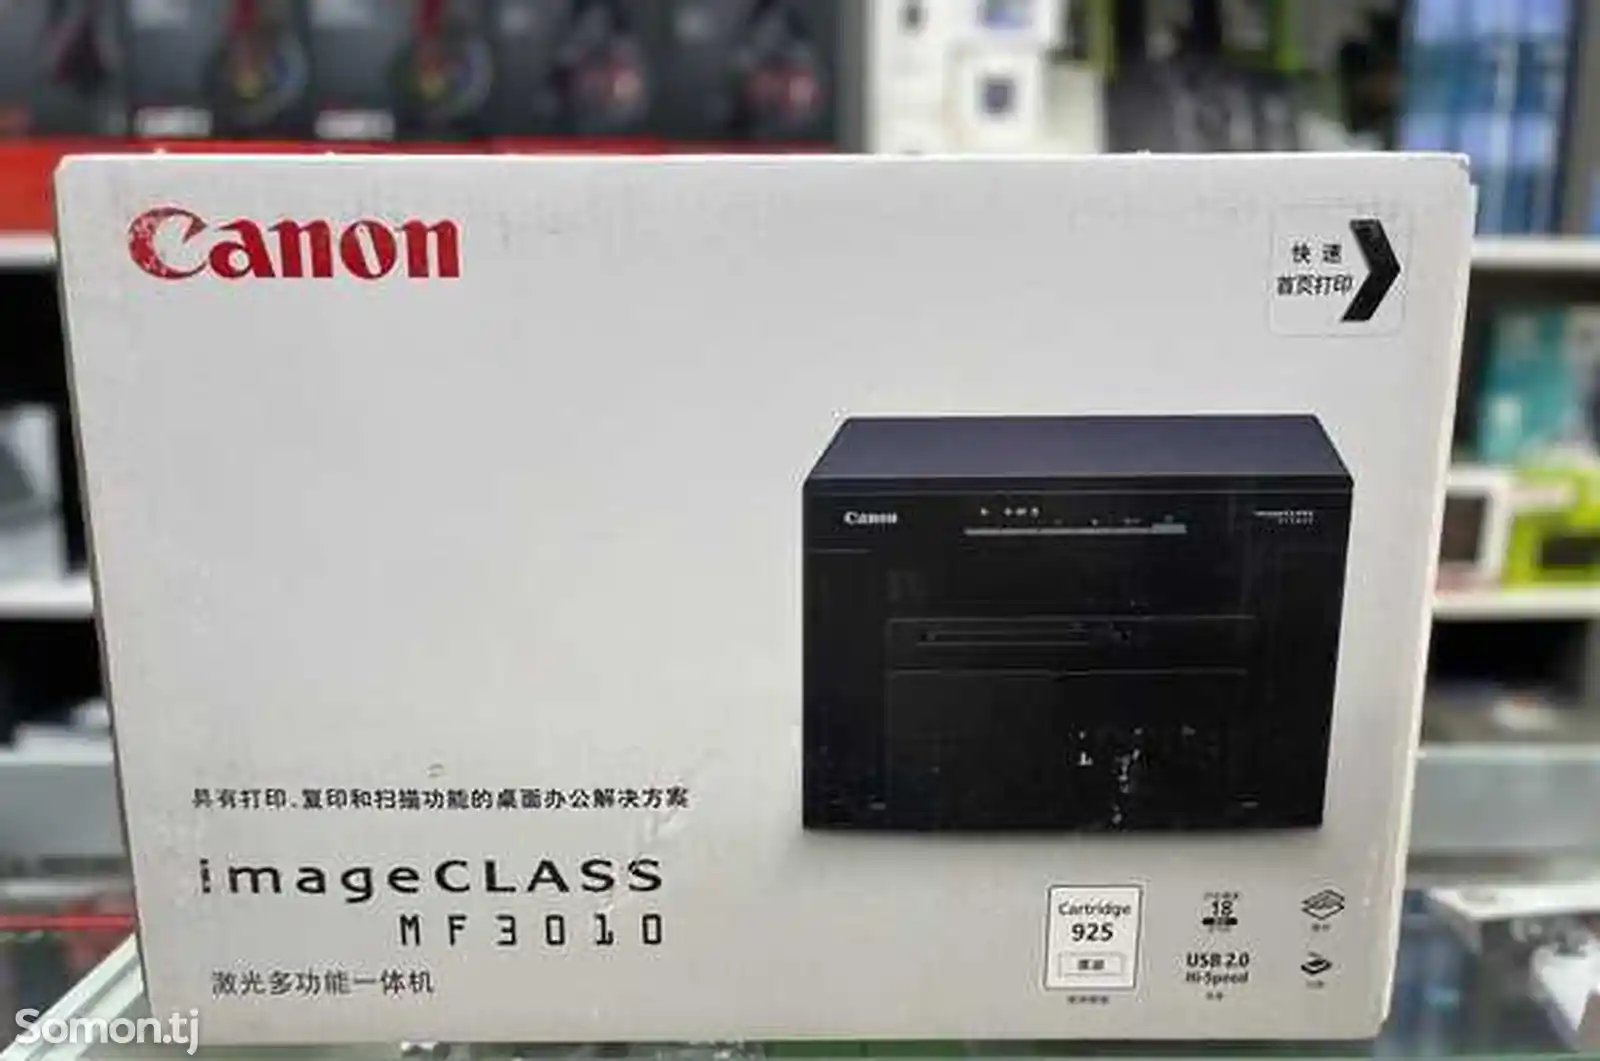 Принтер Canon 3010 image class-1